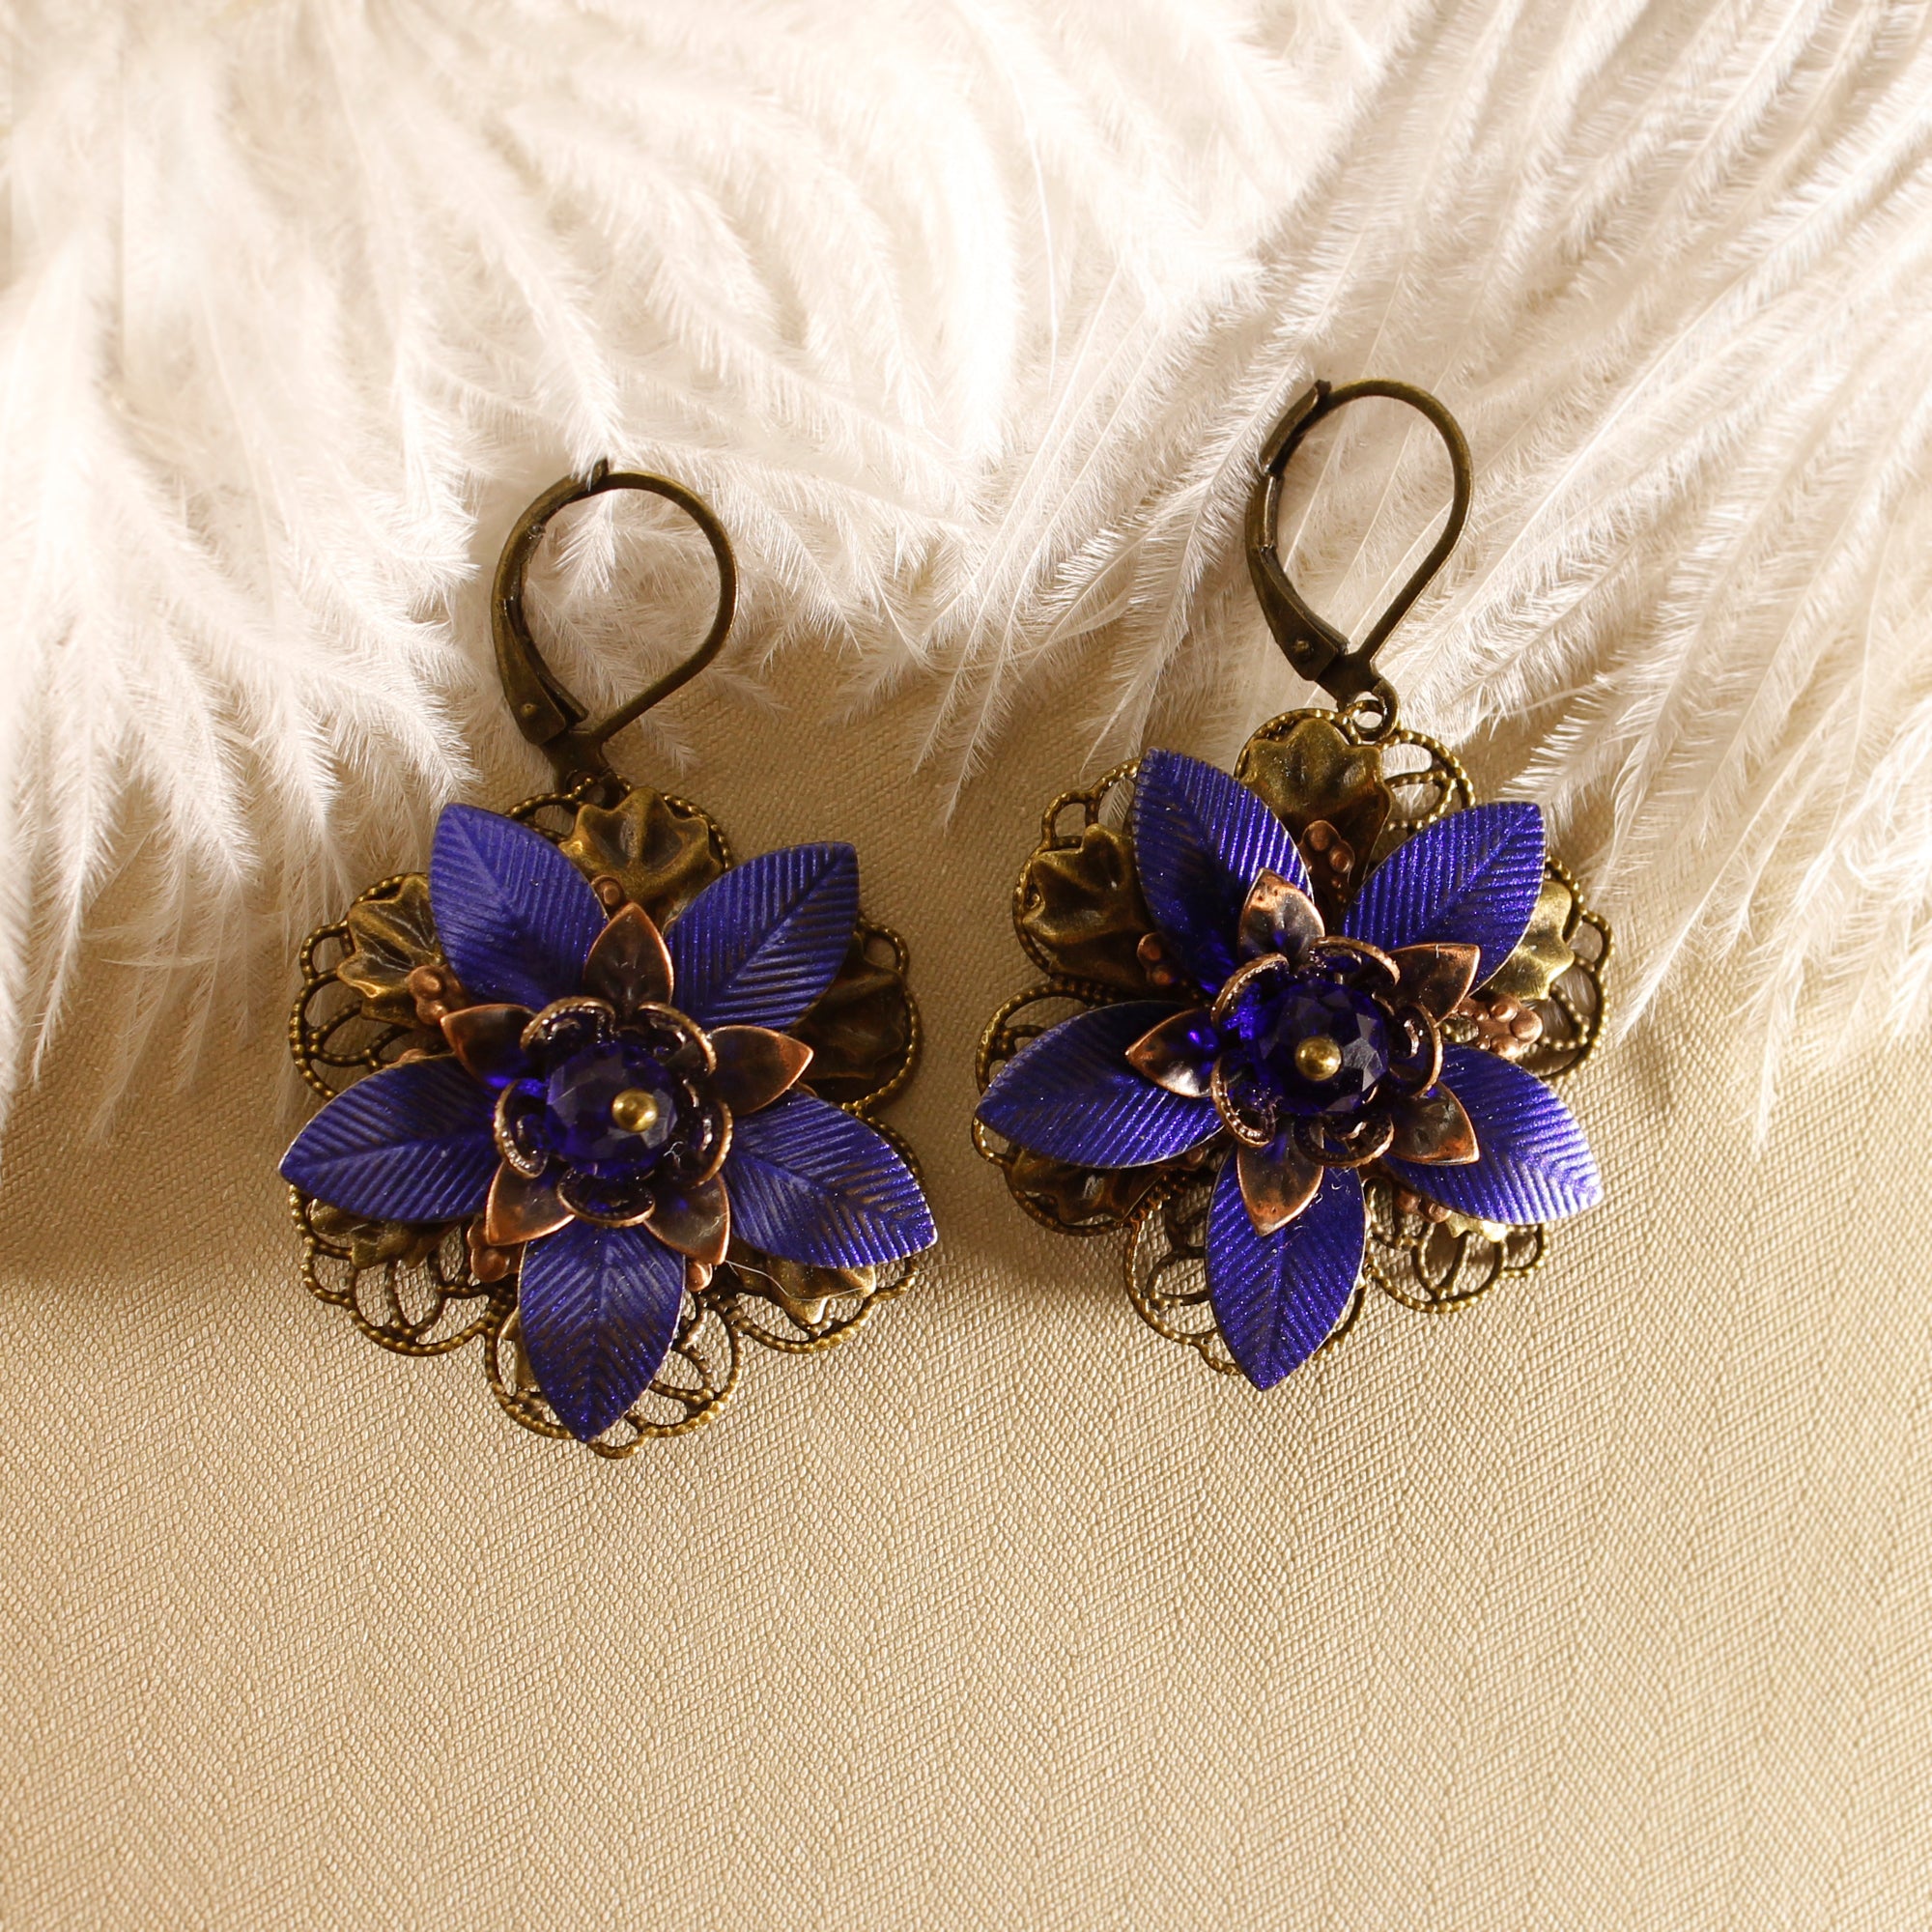 Vintage Style Earrings - Blue Flowers